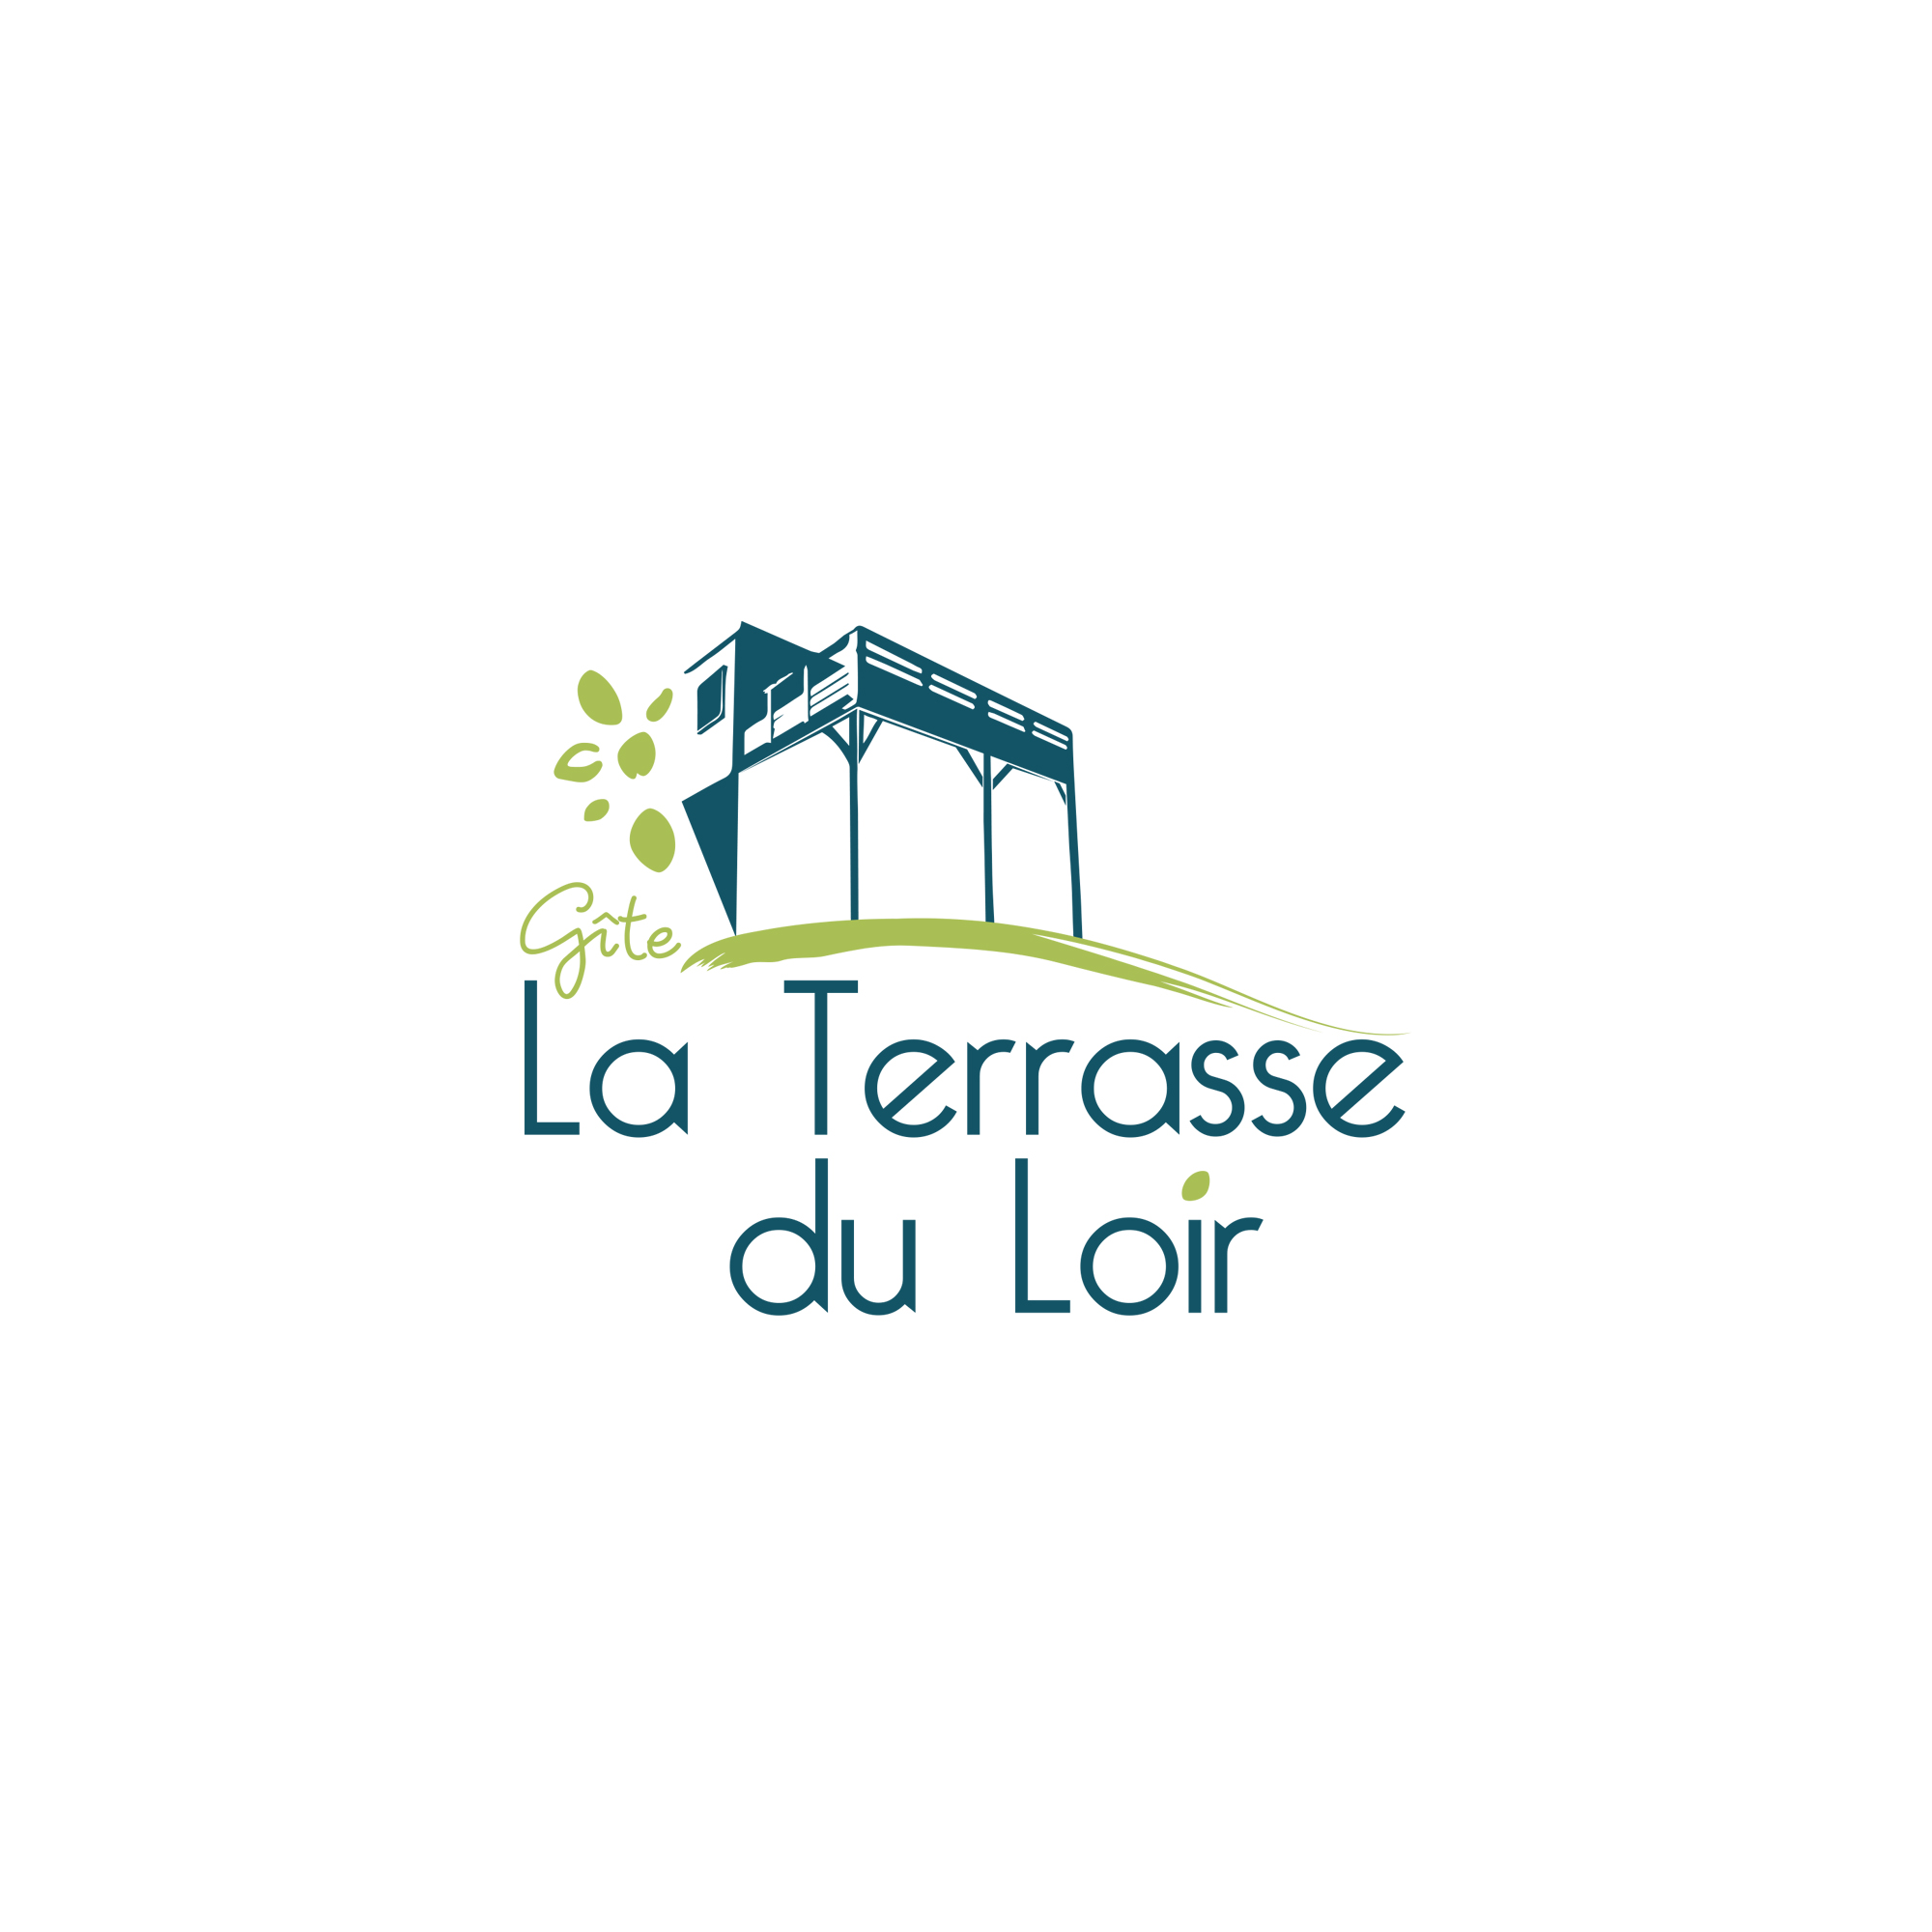 https://www.facebook.com/G%C3%AEte-La-Terrasse-du-Loir-103125532016378